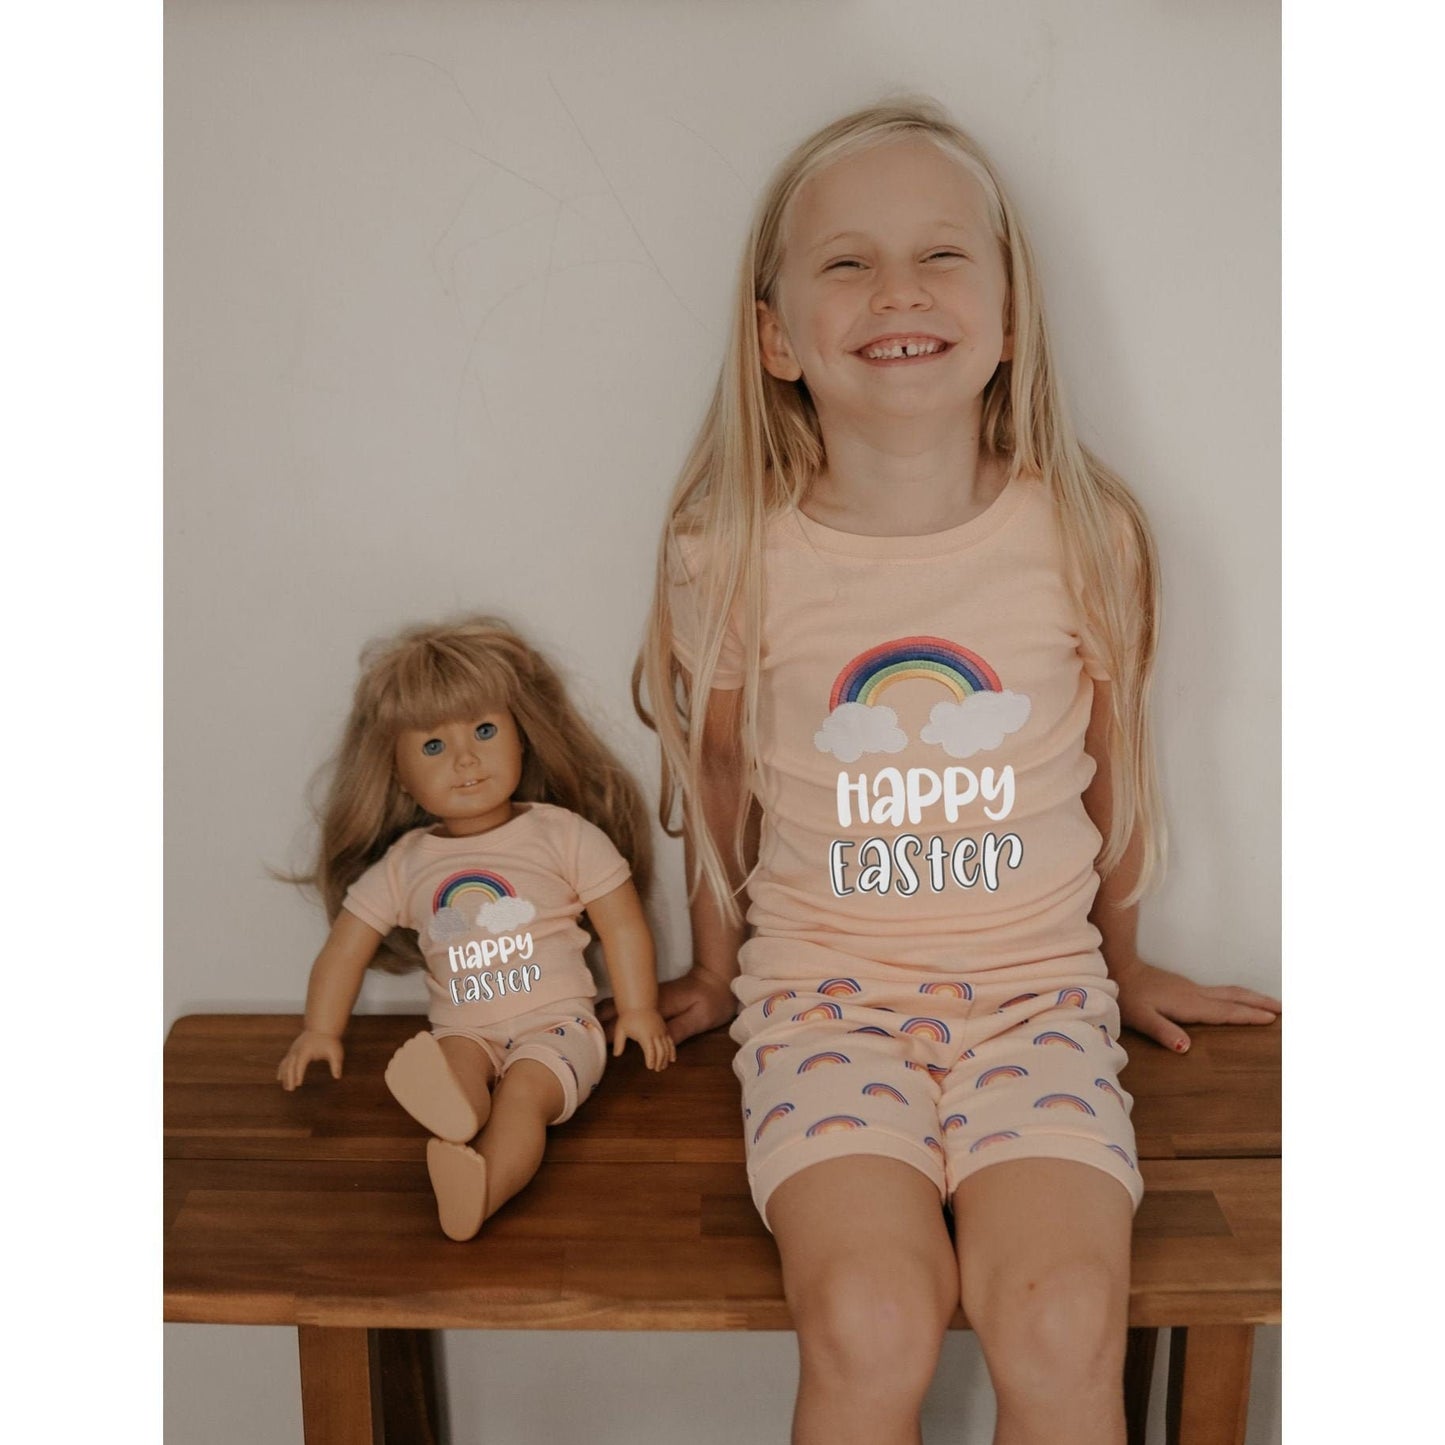 Happy Easter Girl and Doll Shorts Pajamas - Girls Rainbow Pajamas - Matching Doll Easter Pajamas - Easter Morning Pajamas